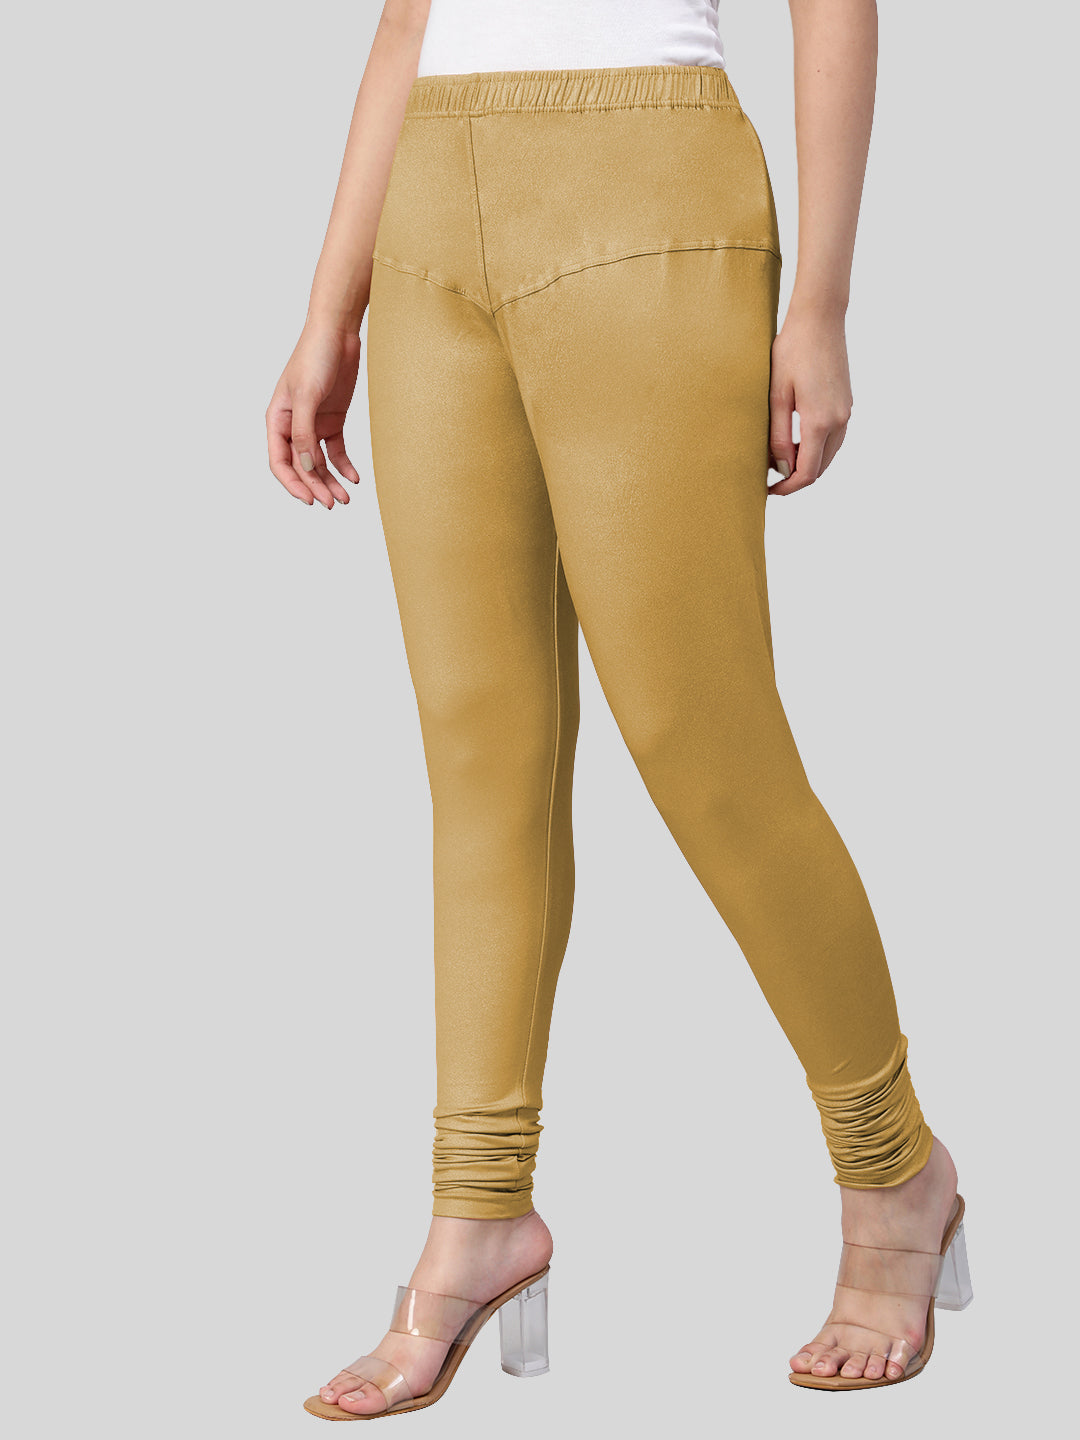 Buy Lyra Women's Brown Solid Churidar Leggings Online at Best Prices in  India - JioMart.